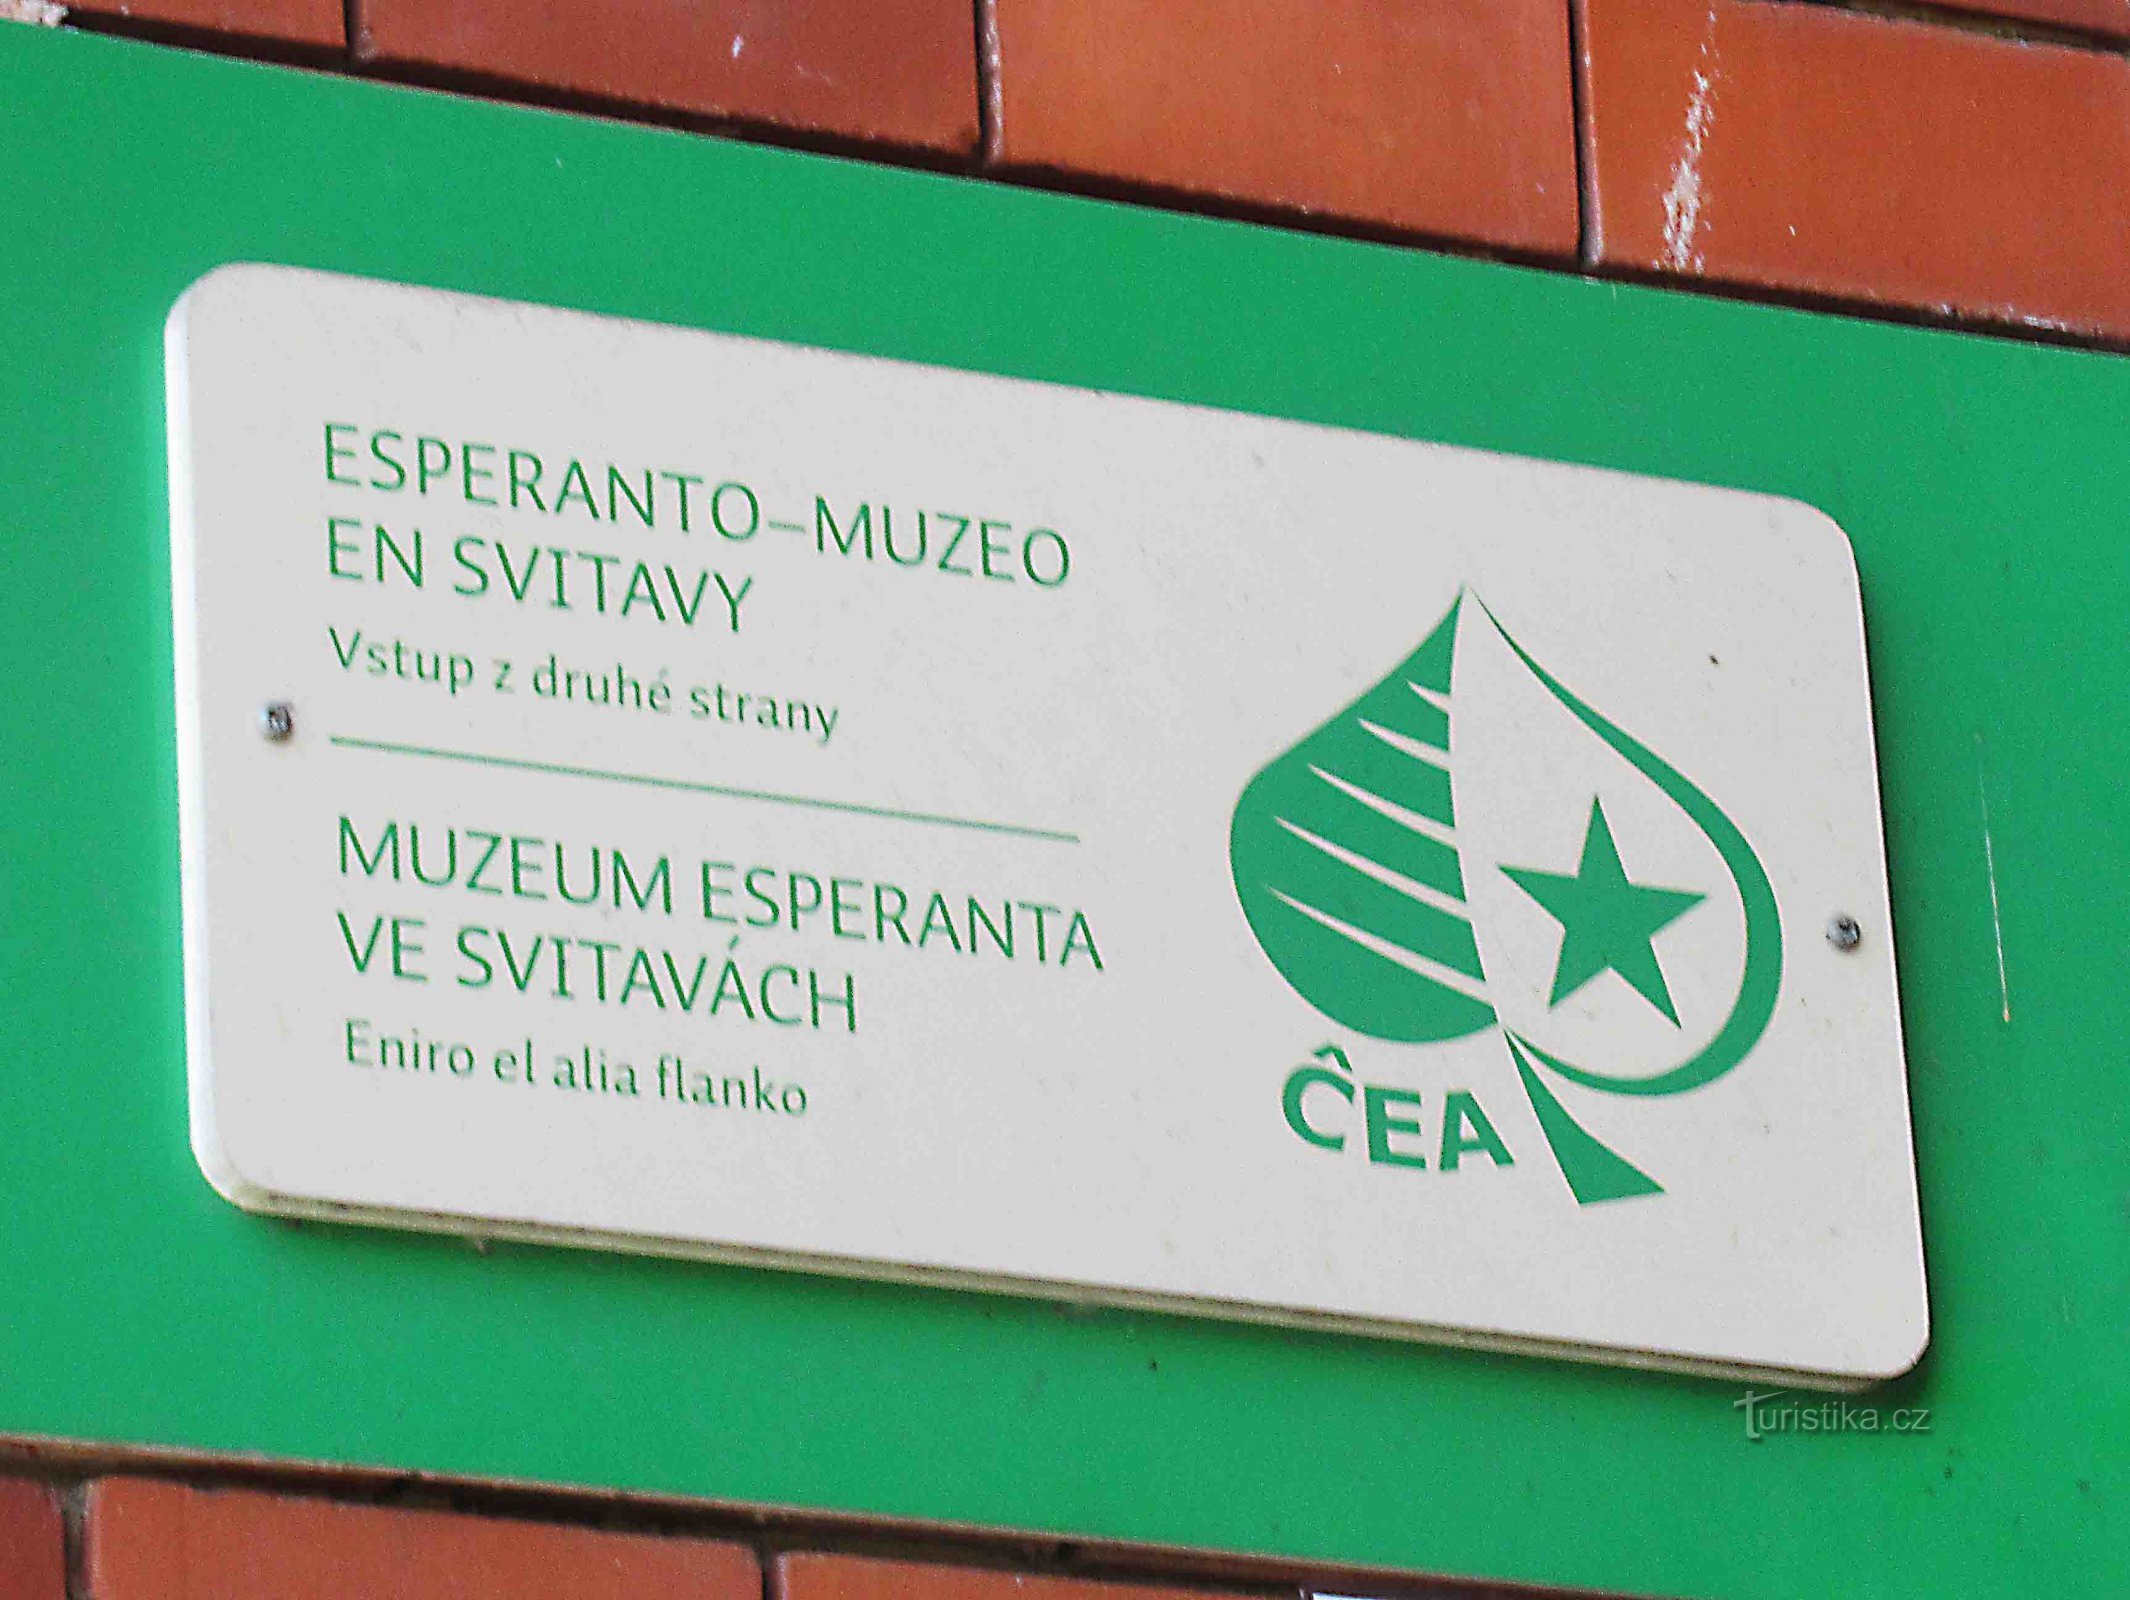 Musée de l'espéranto Svitava